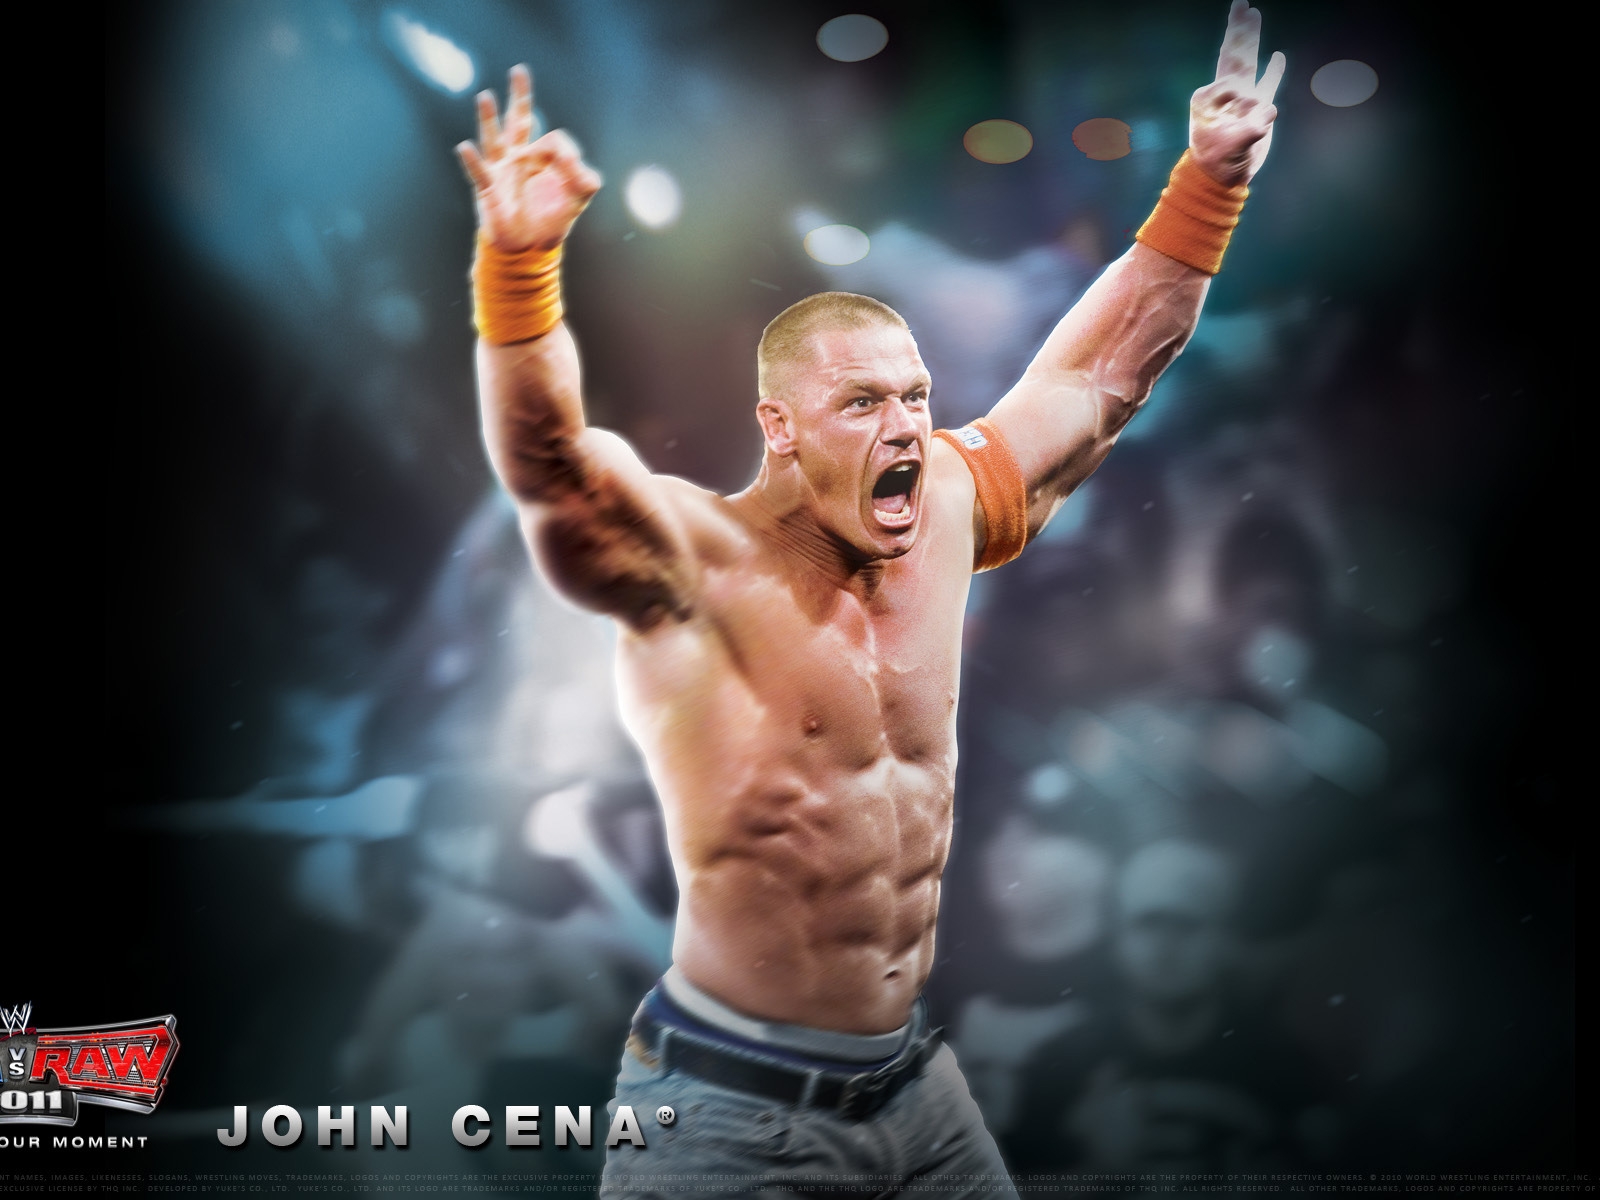 John Cena for 1600 x 1200 resolution